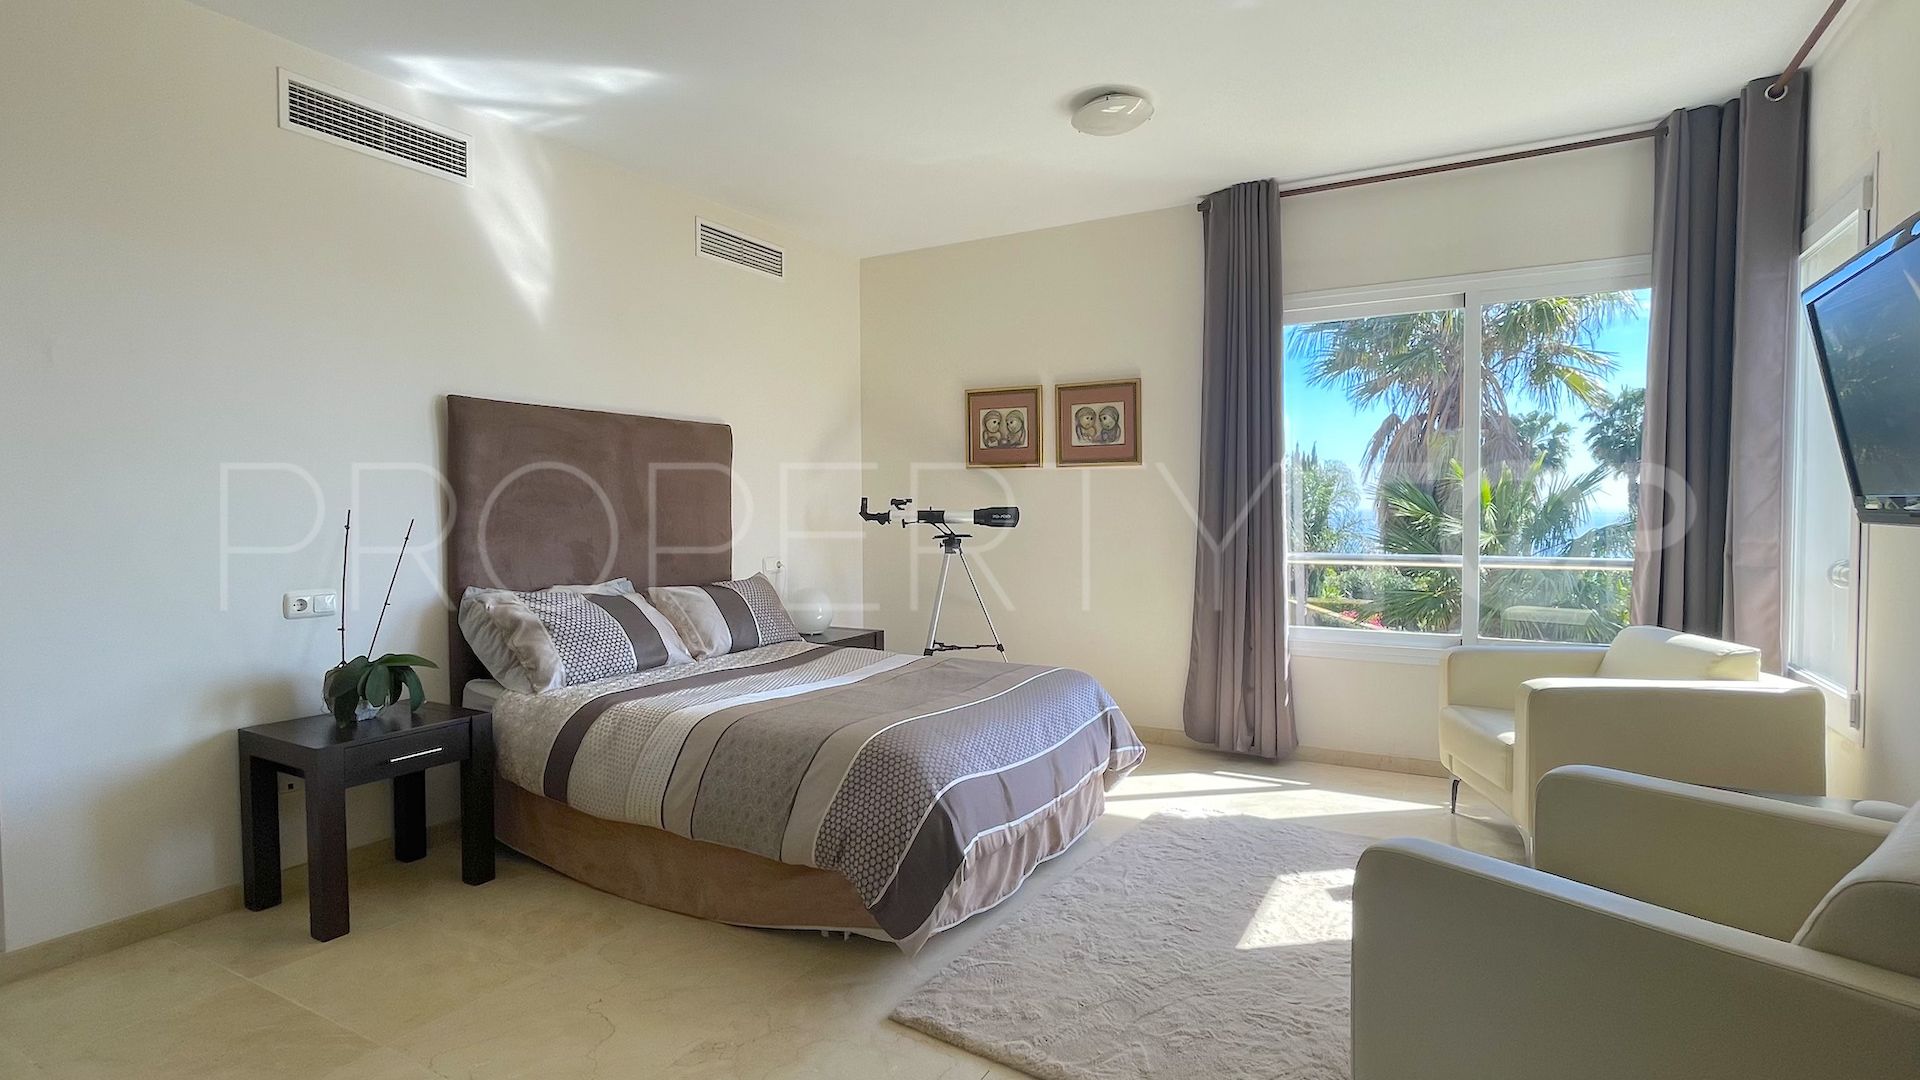 5 bedrooms villa in Alcaidesa for sale